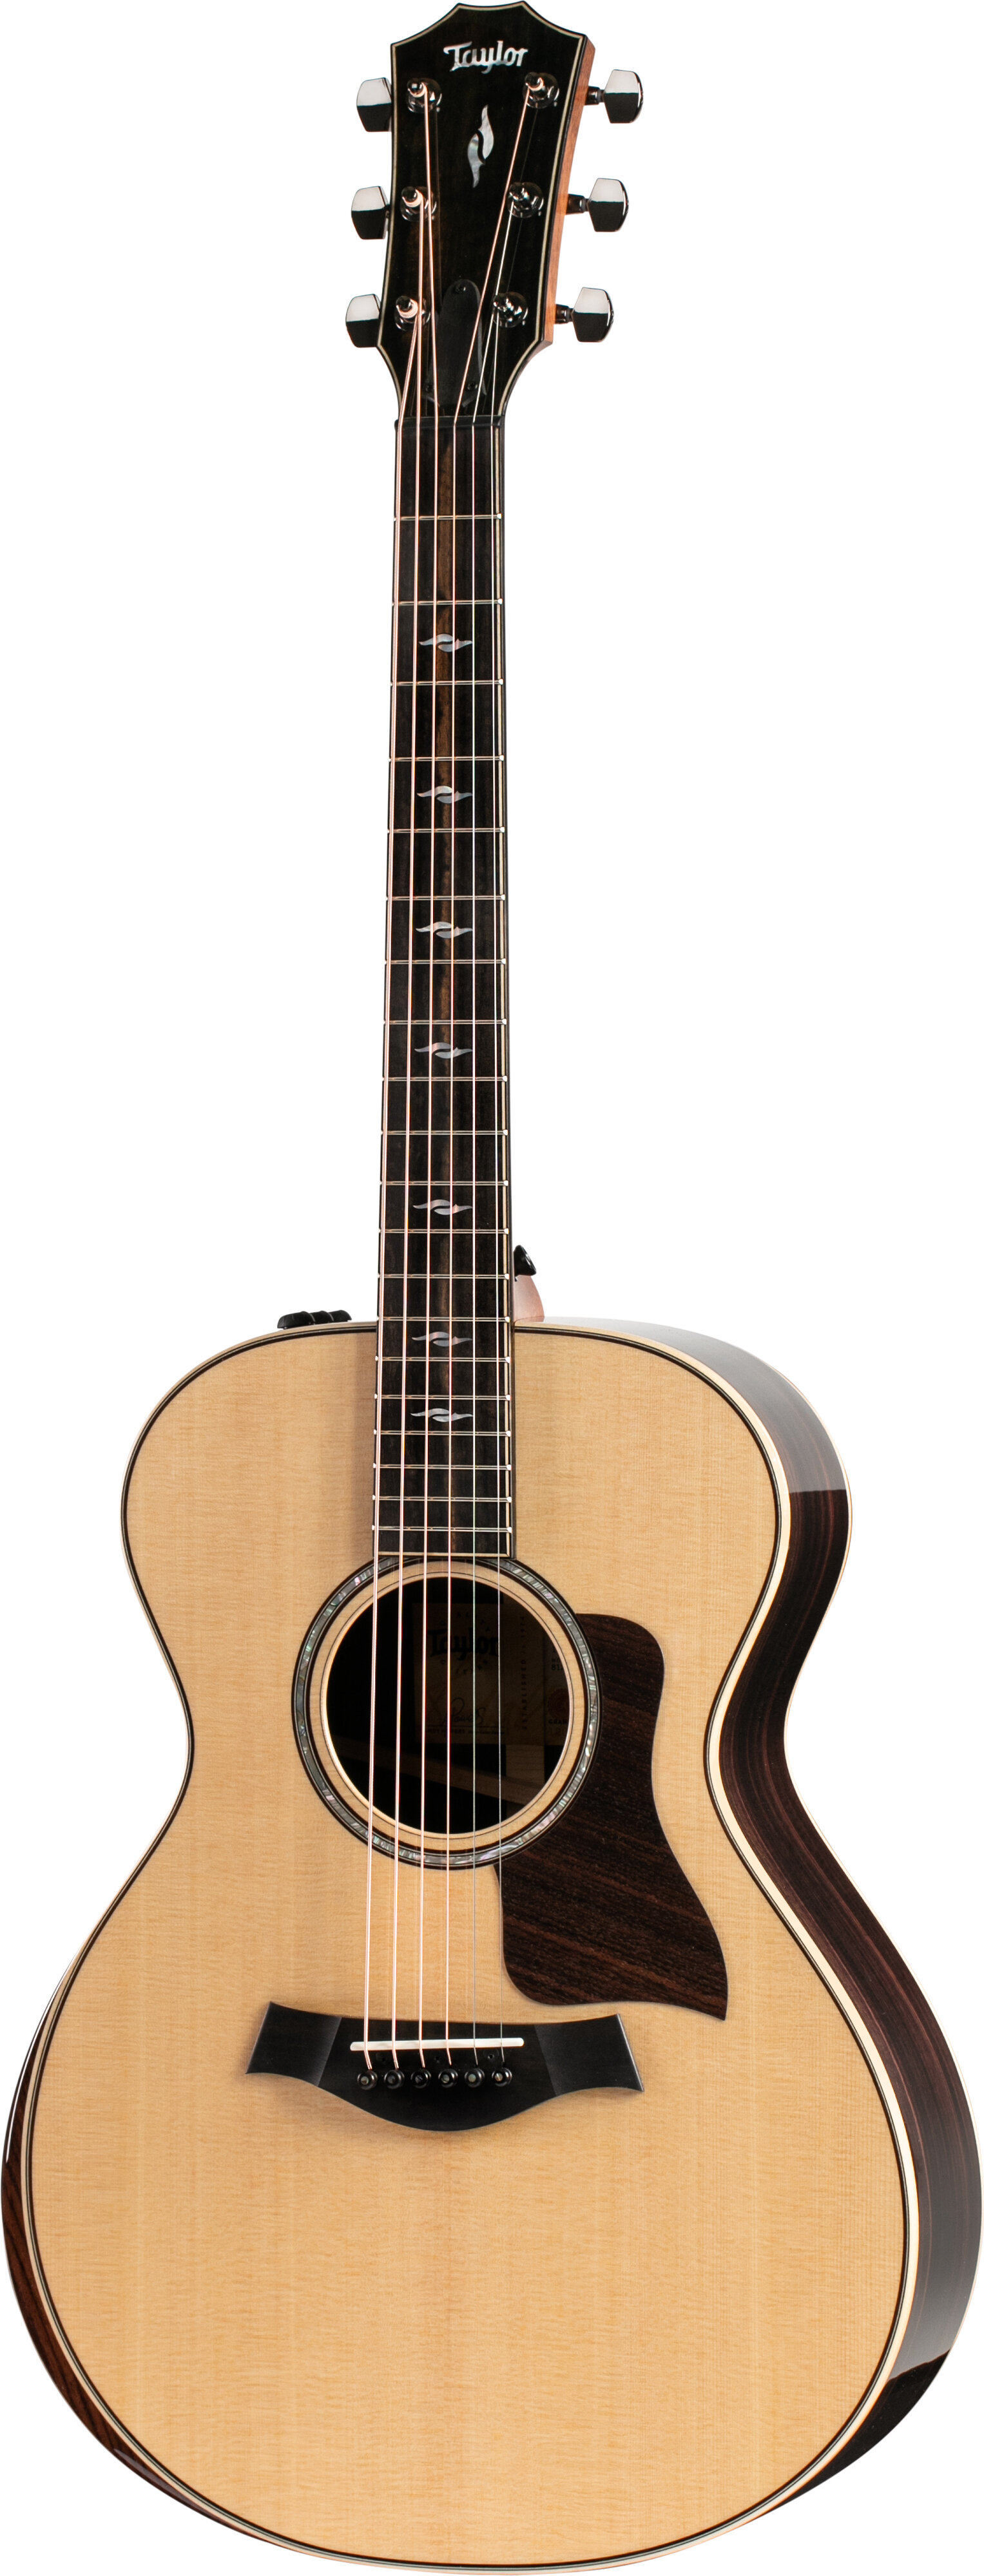 Taylor Guitars 812e-22